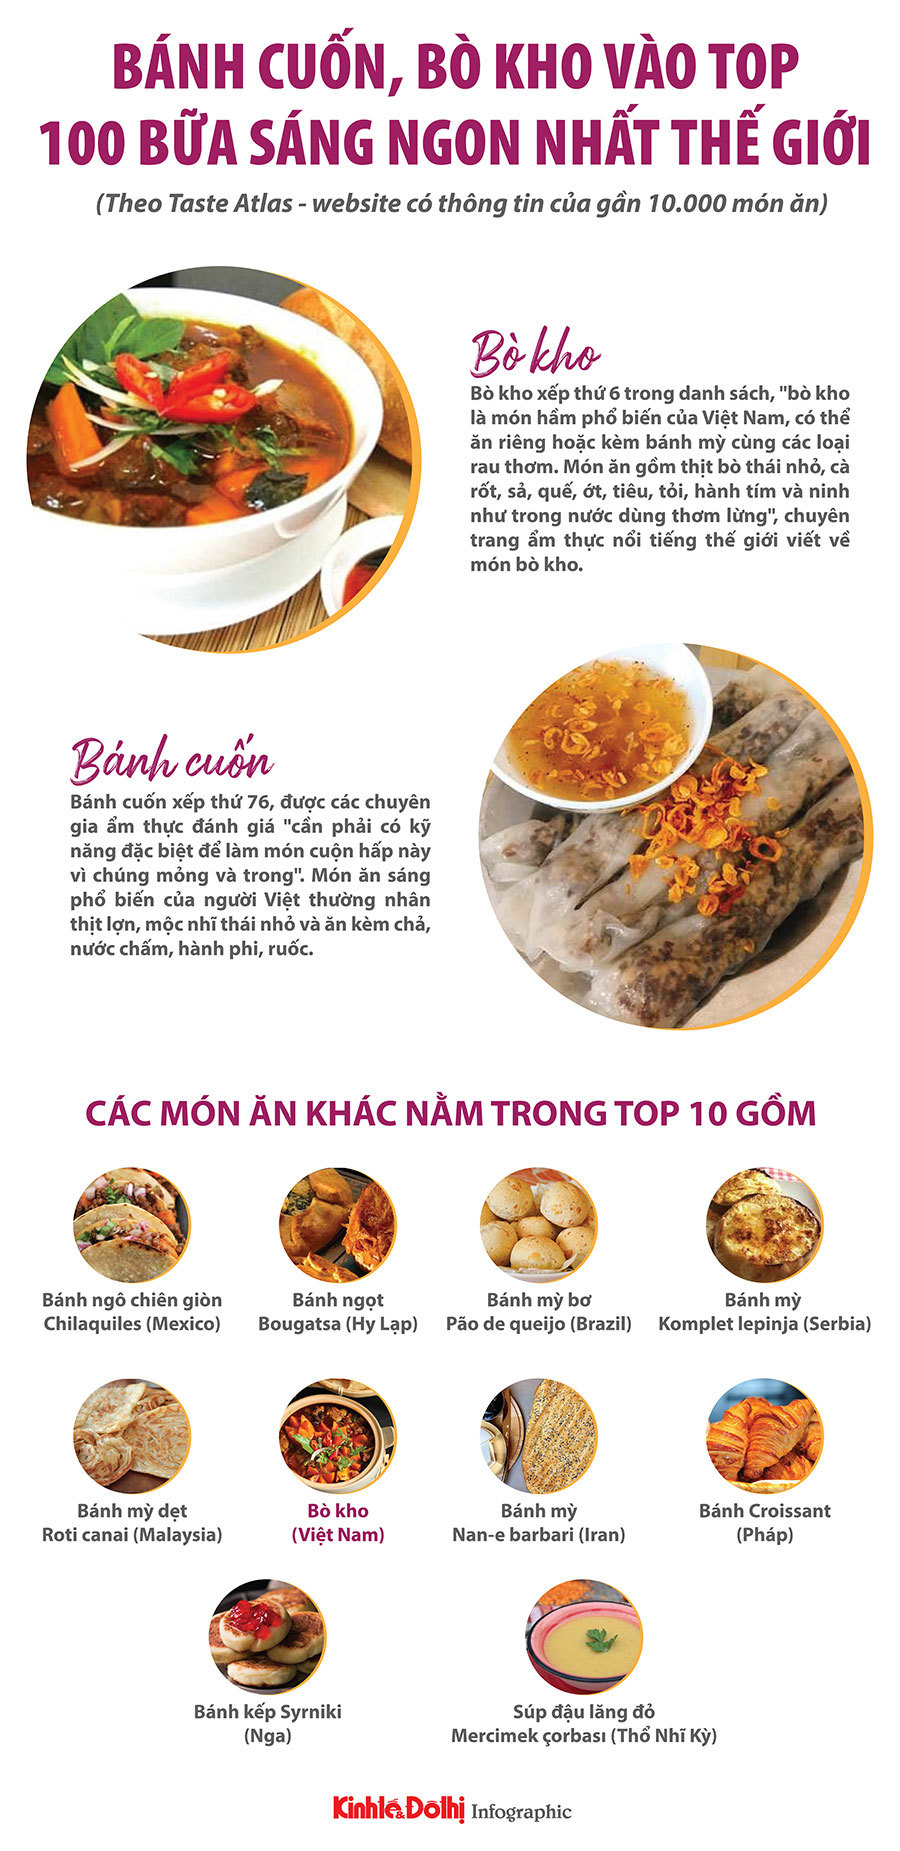 Việt Nam có hai món ăn vào top 100 bữa sáng ngon nhất thế giới - Ảnh 1